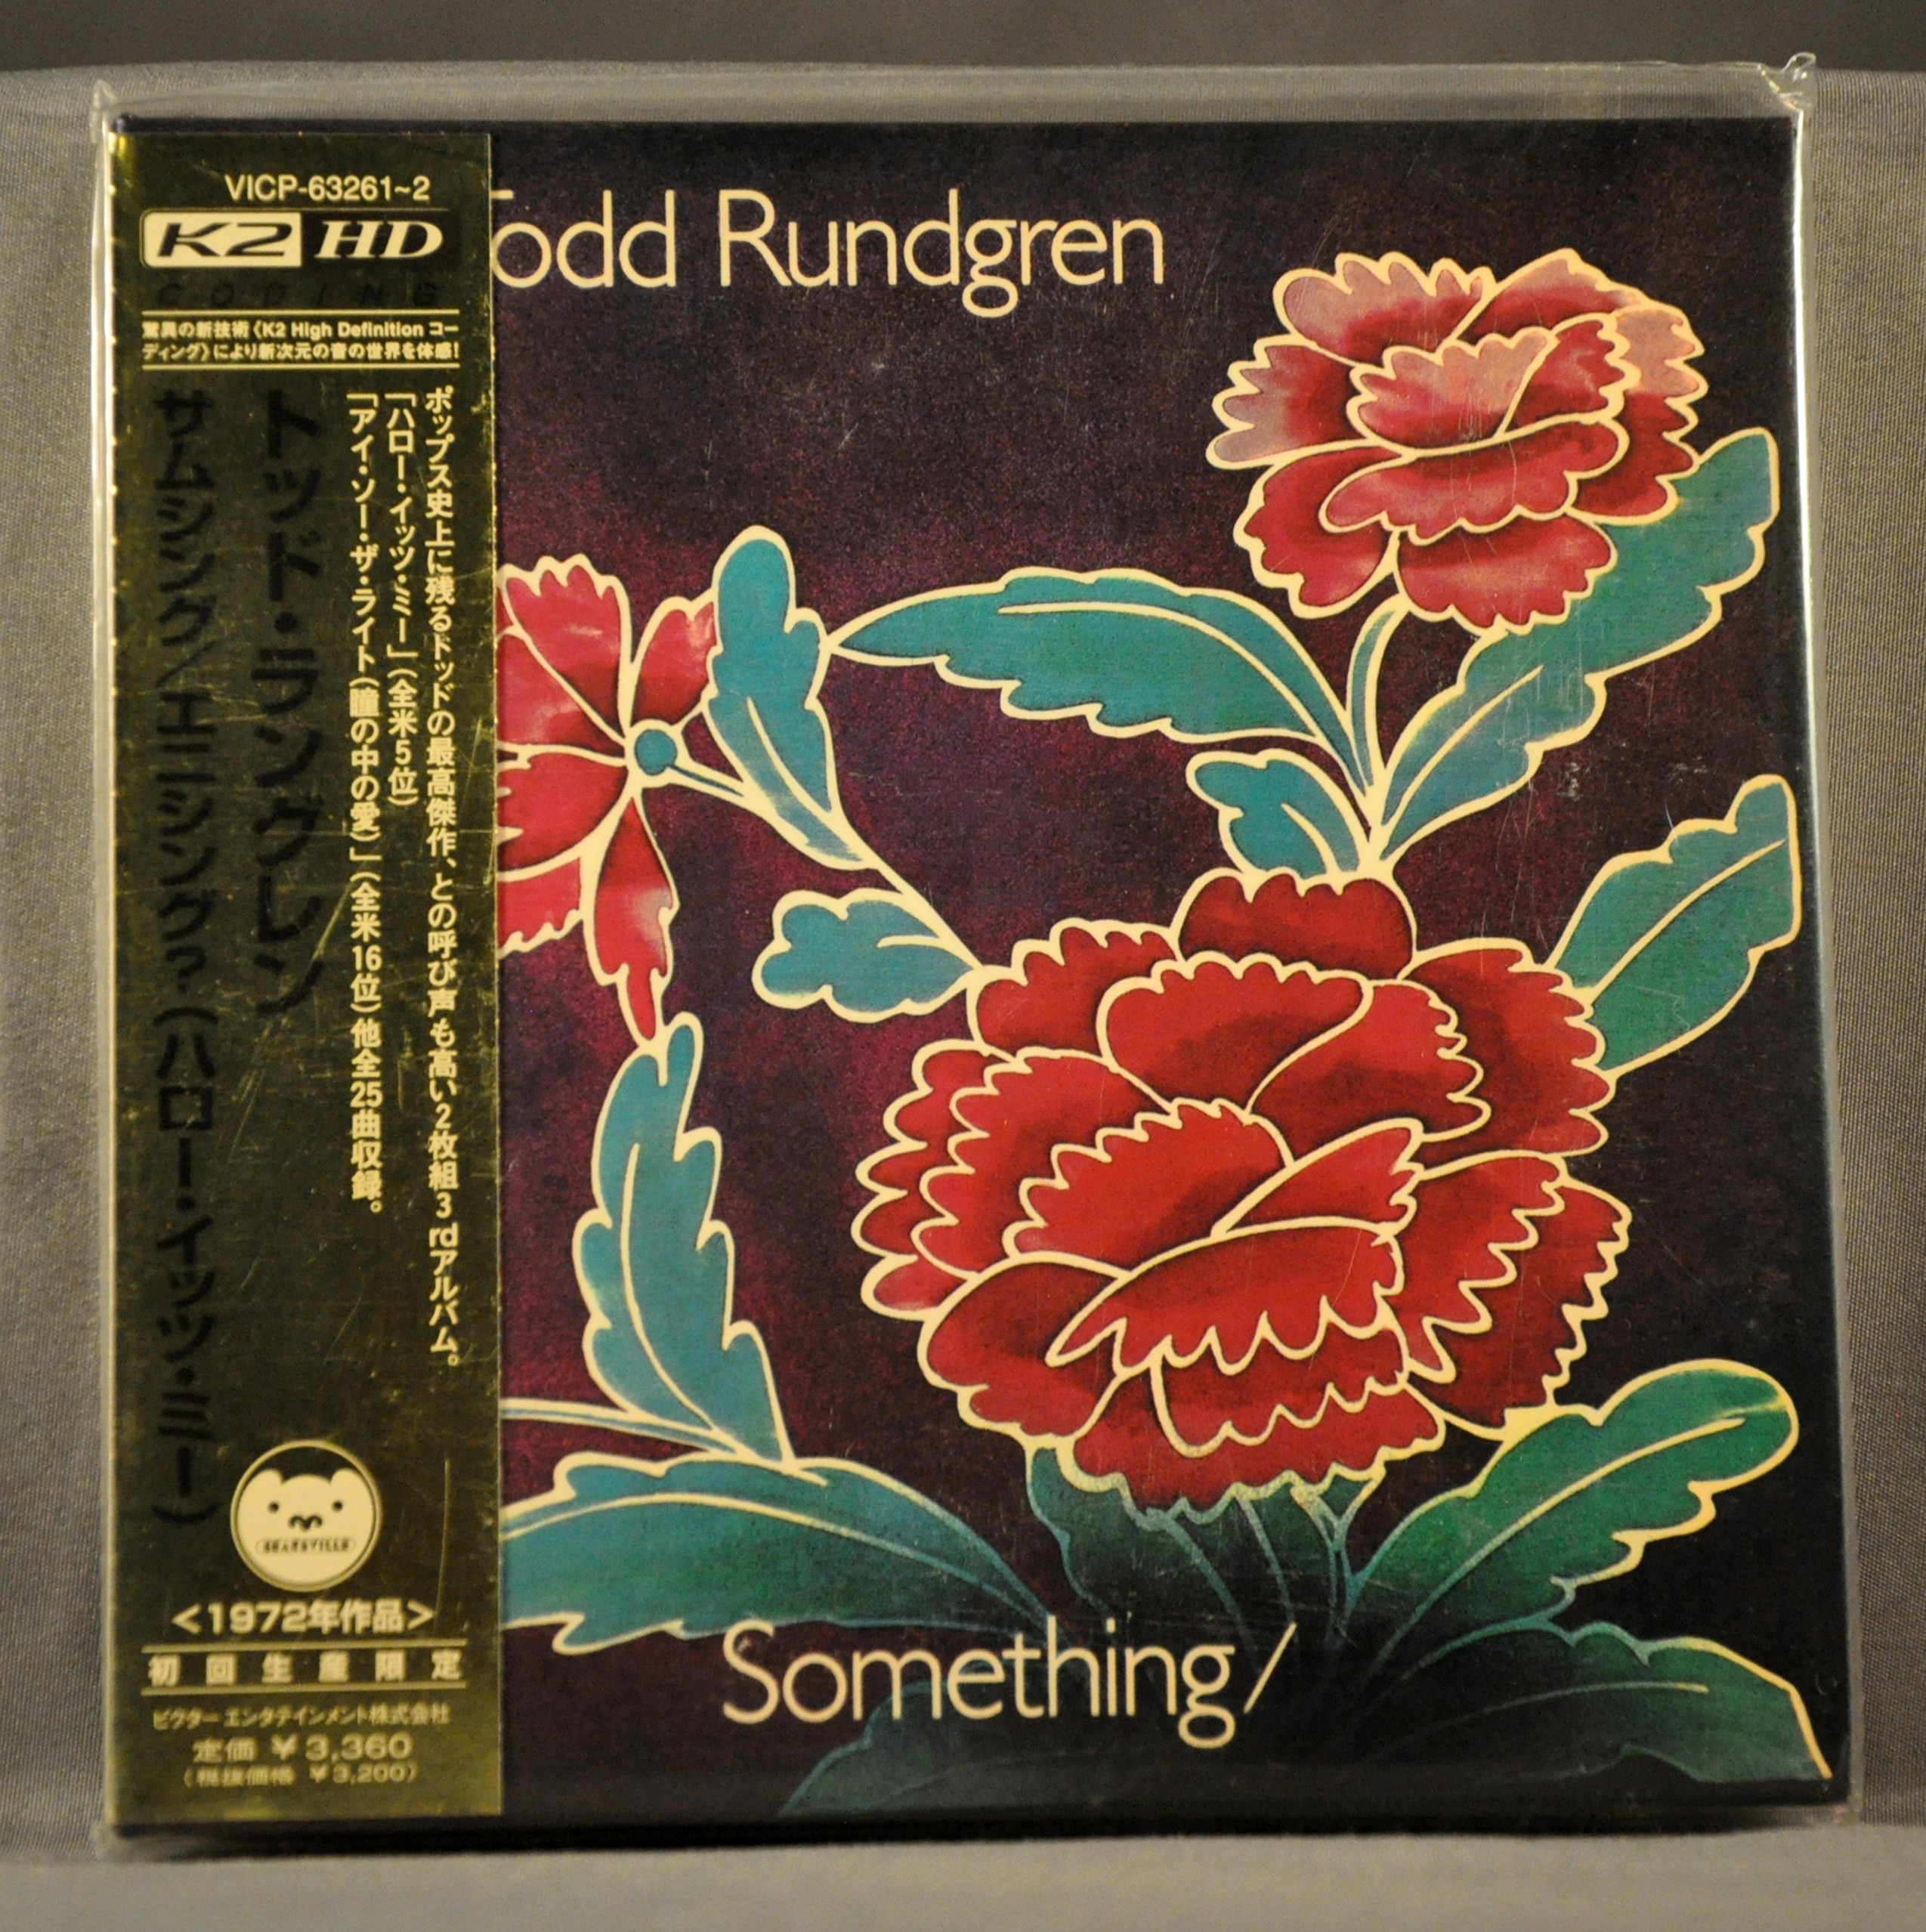 TODD RUNDGREN - Something/Anything? (K2HD) -NEW VICP-63261/2